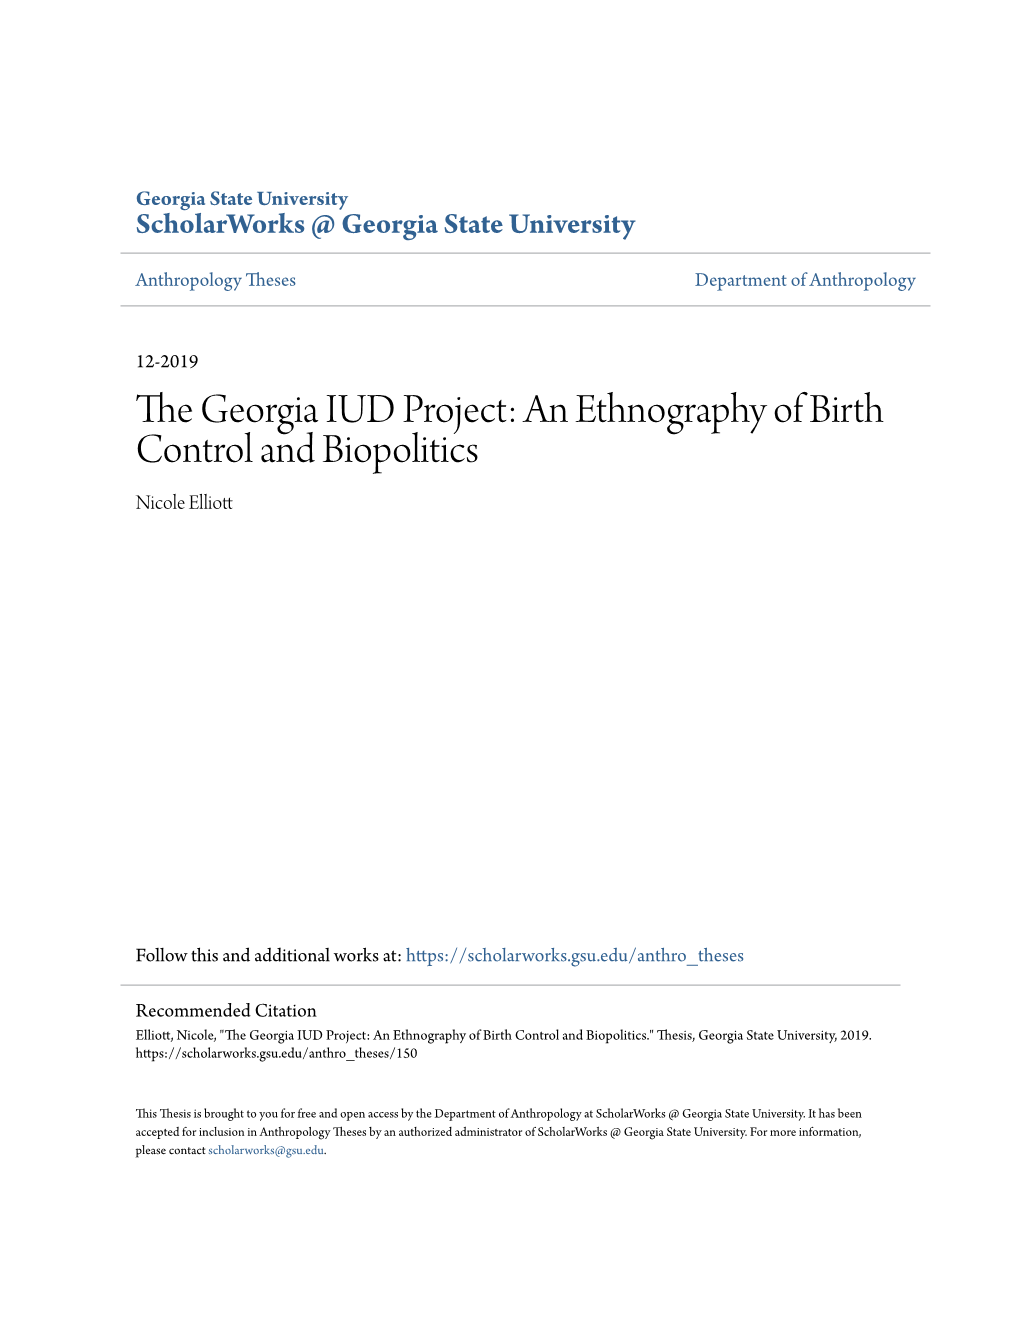 An Ethnography of Birth Control and Biopolitics Nicole Elliott